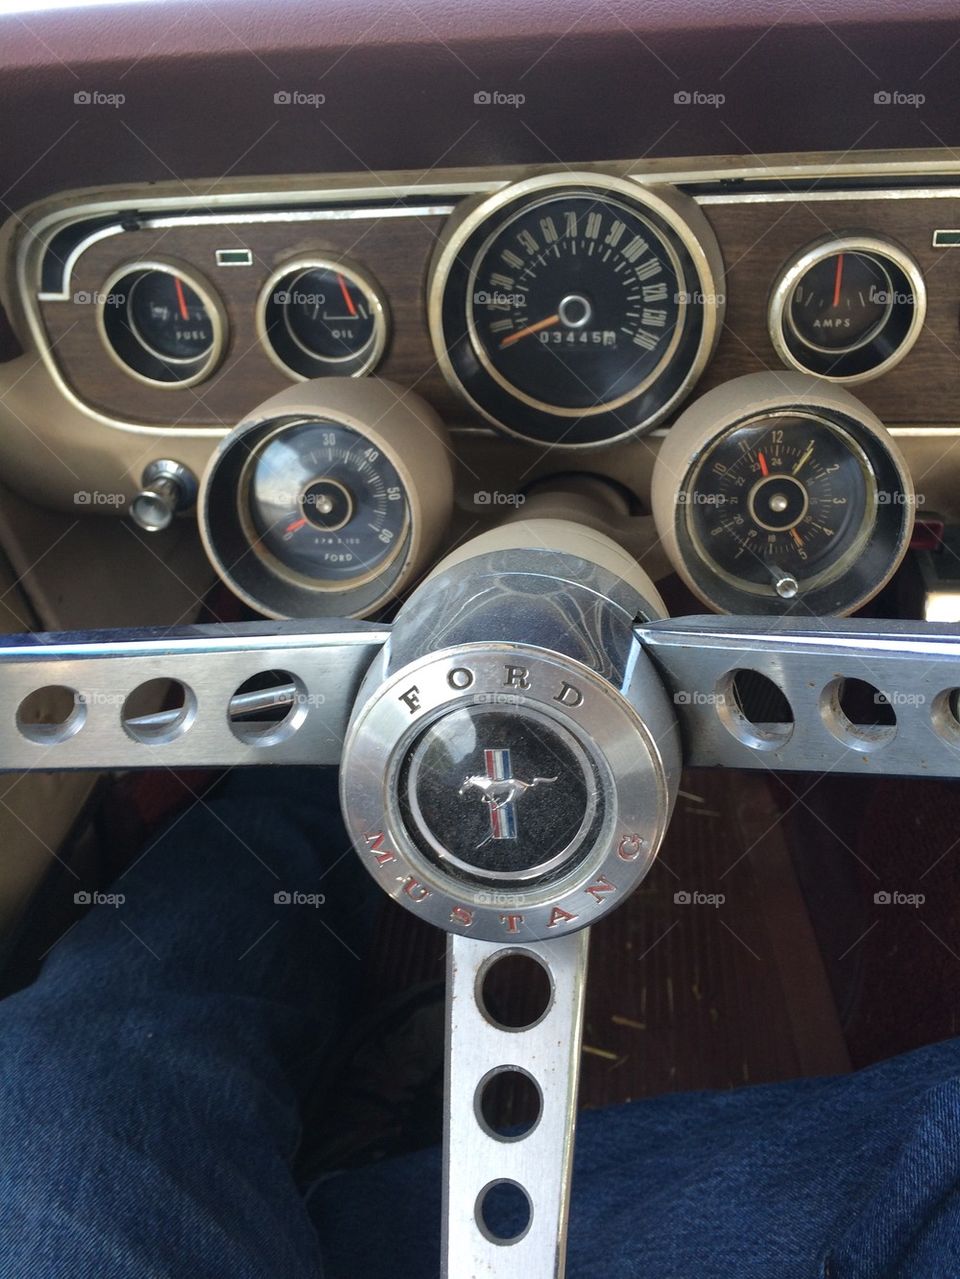 Mustang
1966
Dash
